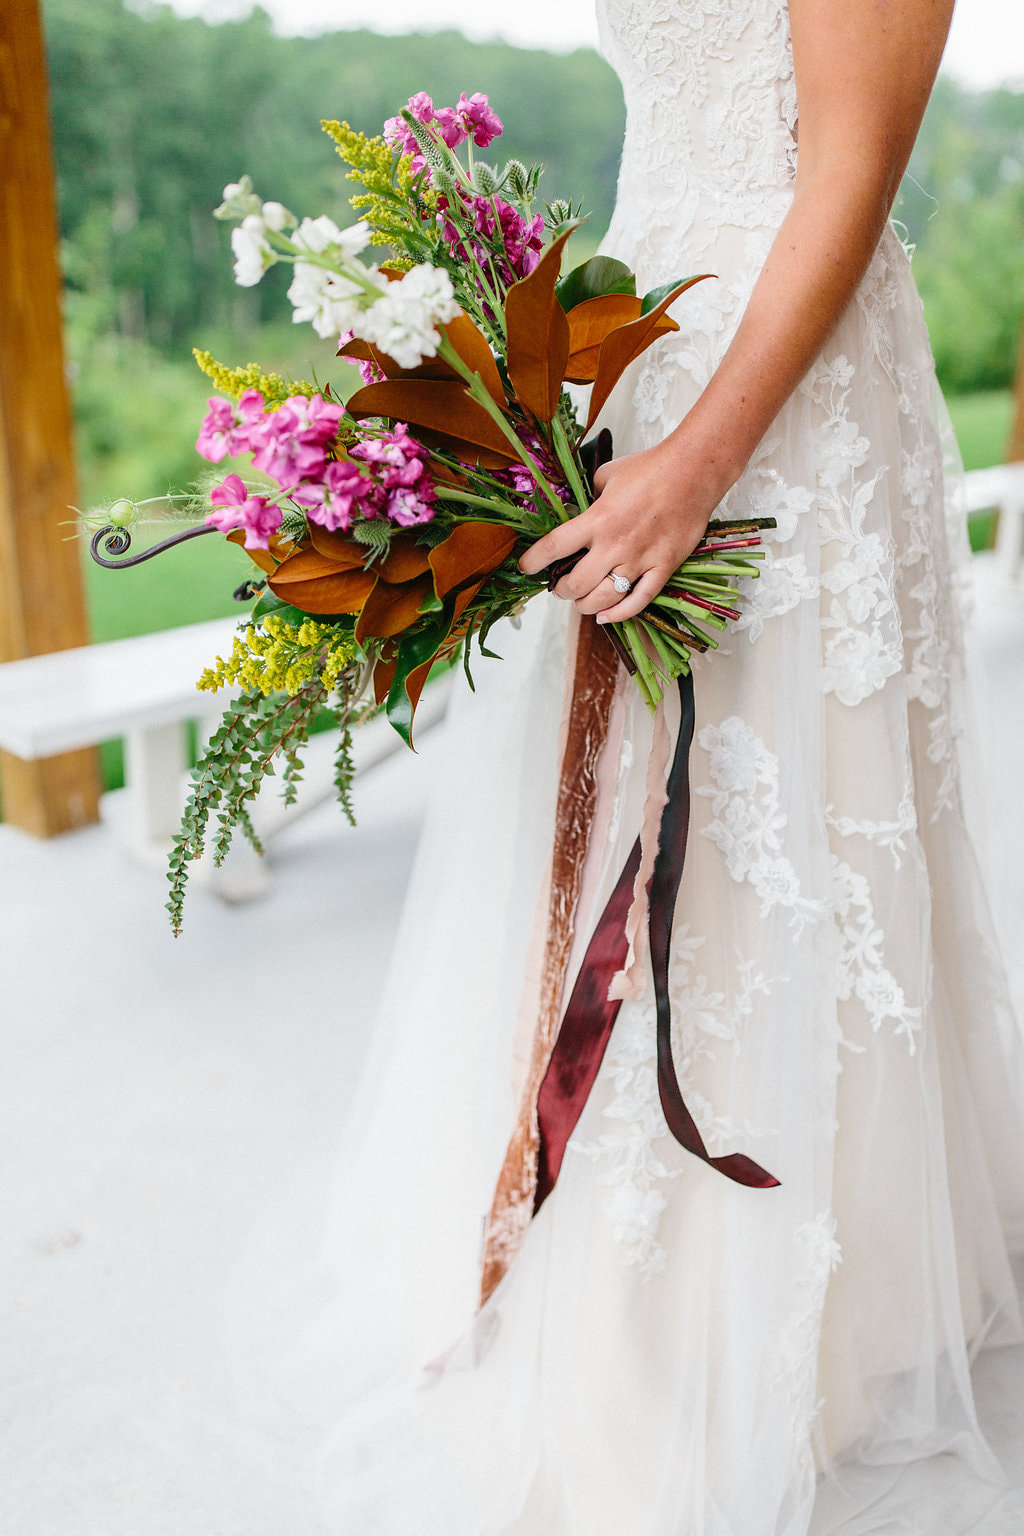 Elegant local flower wedding bouquet by Stems Atlanta